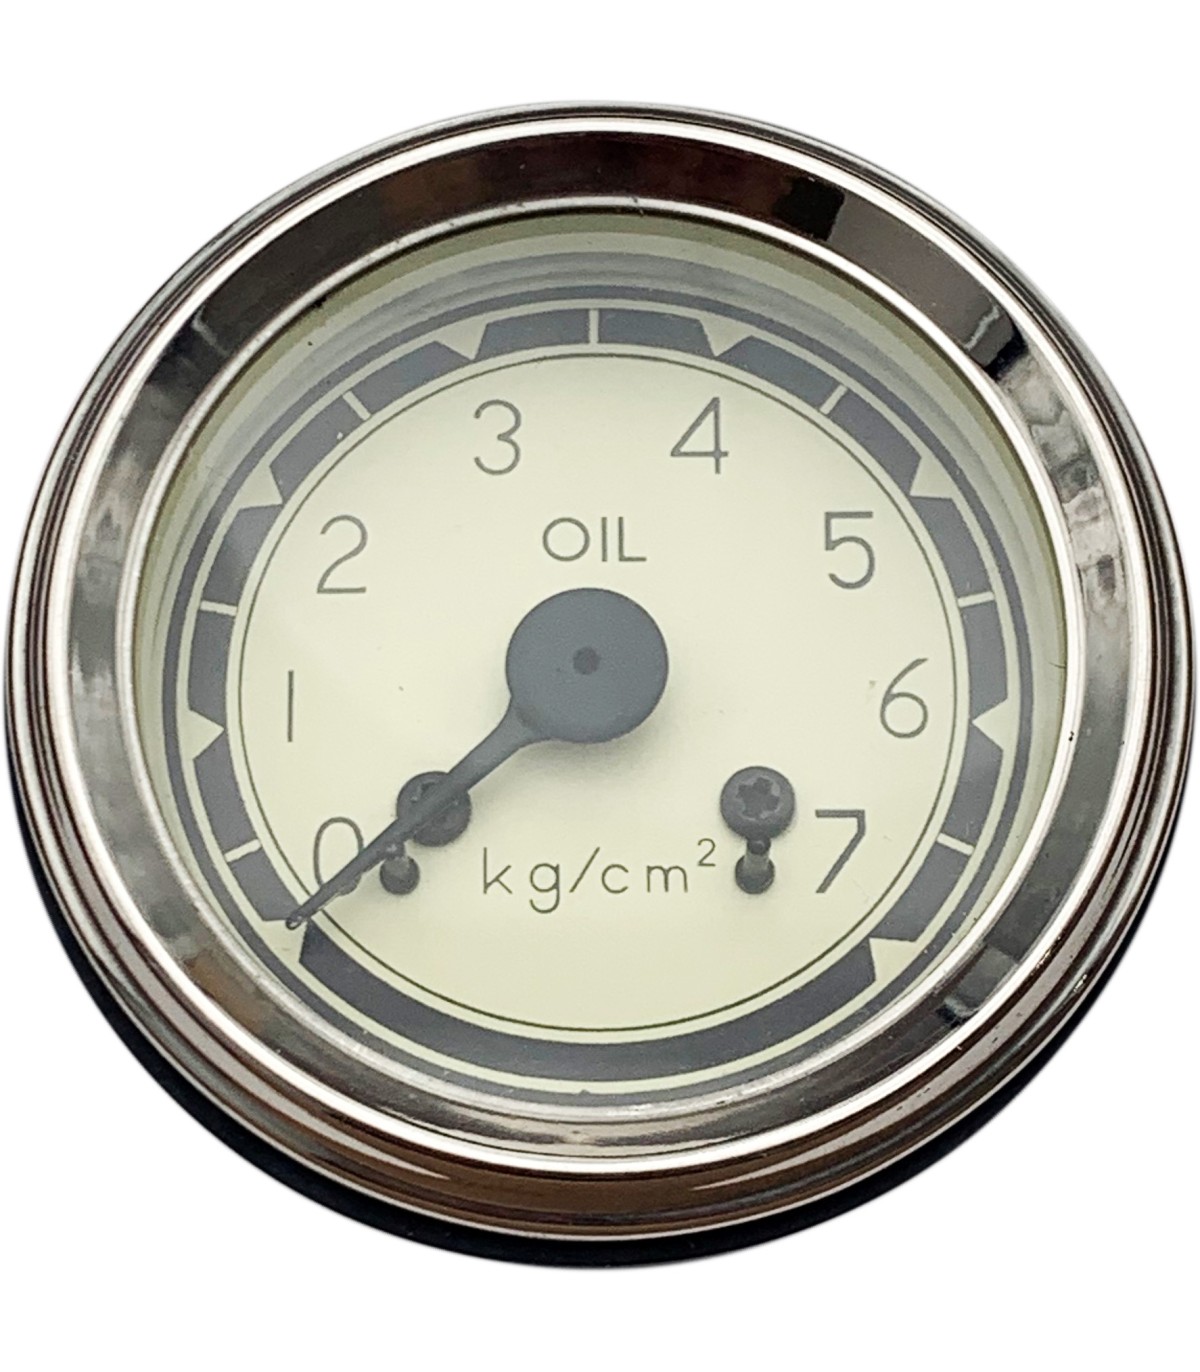 Renel Auto : Manomètre d'huile mécanique - diamètre 52 mm - fond beige